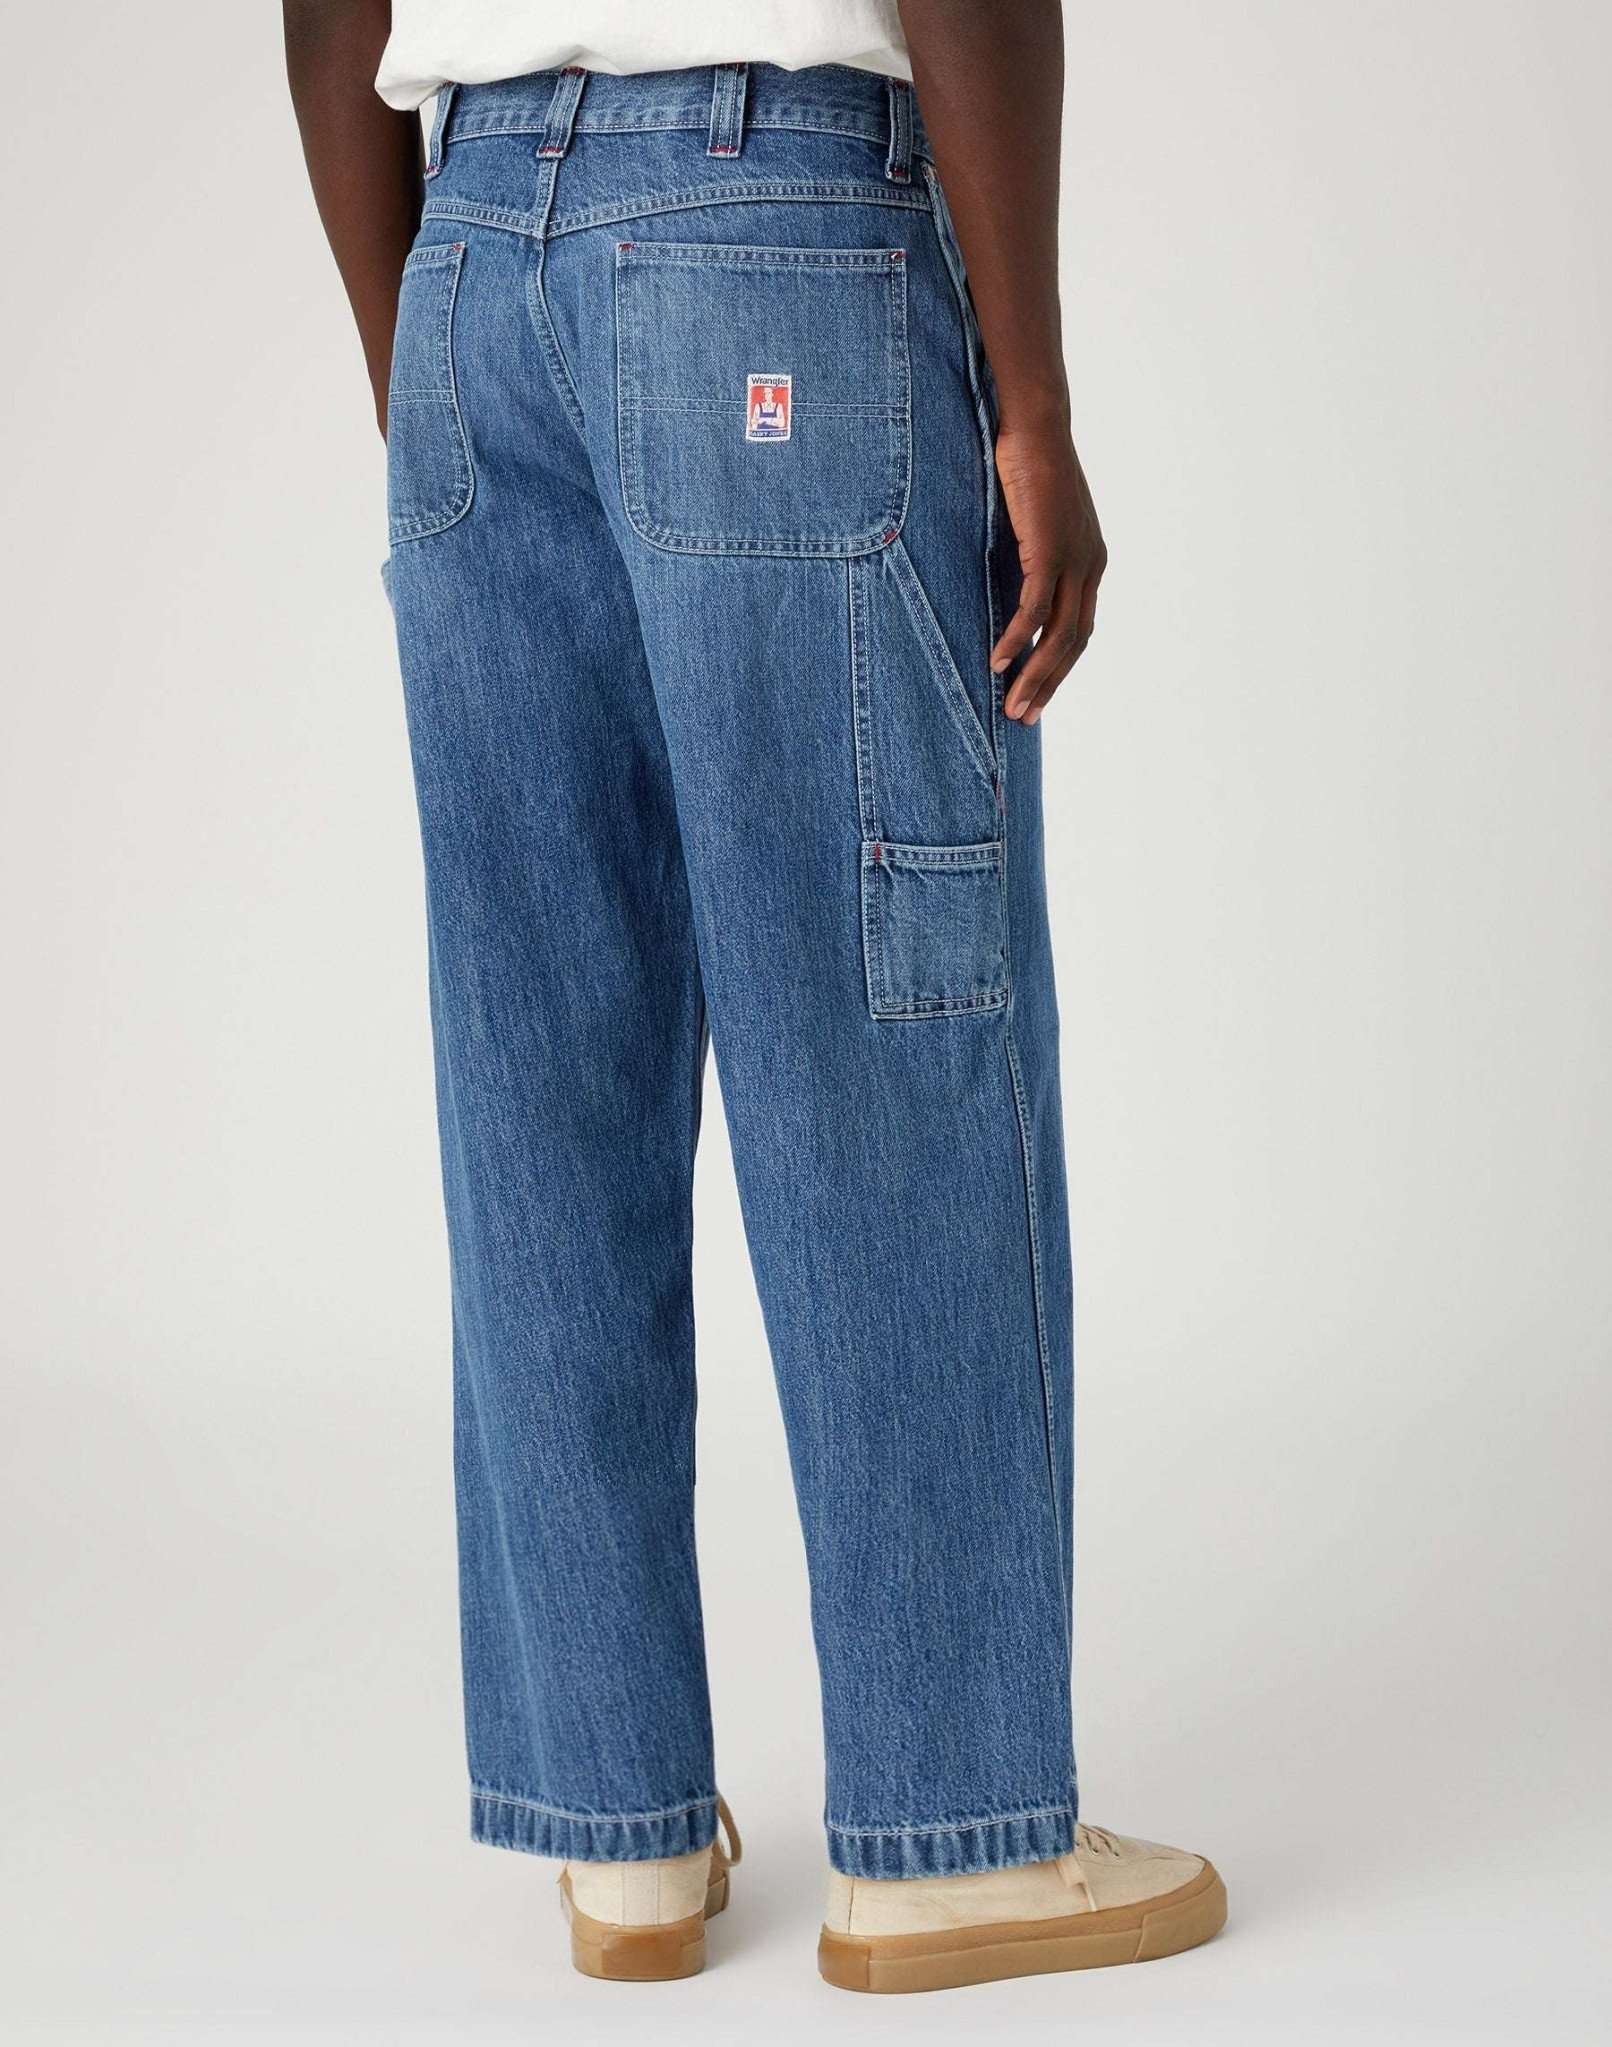 Casey Jones Utility in Paint Splatter Jeans Wrangler   